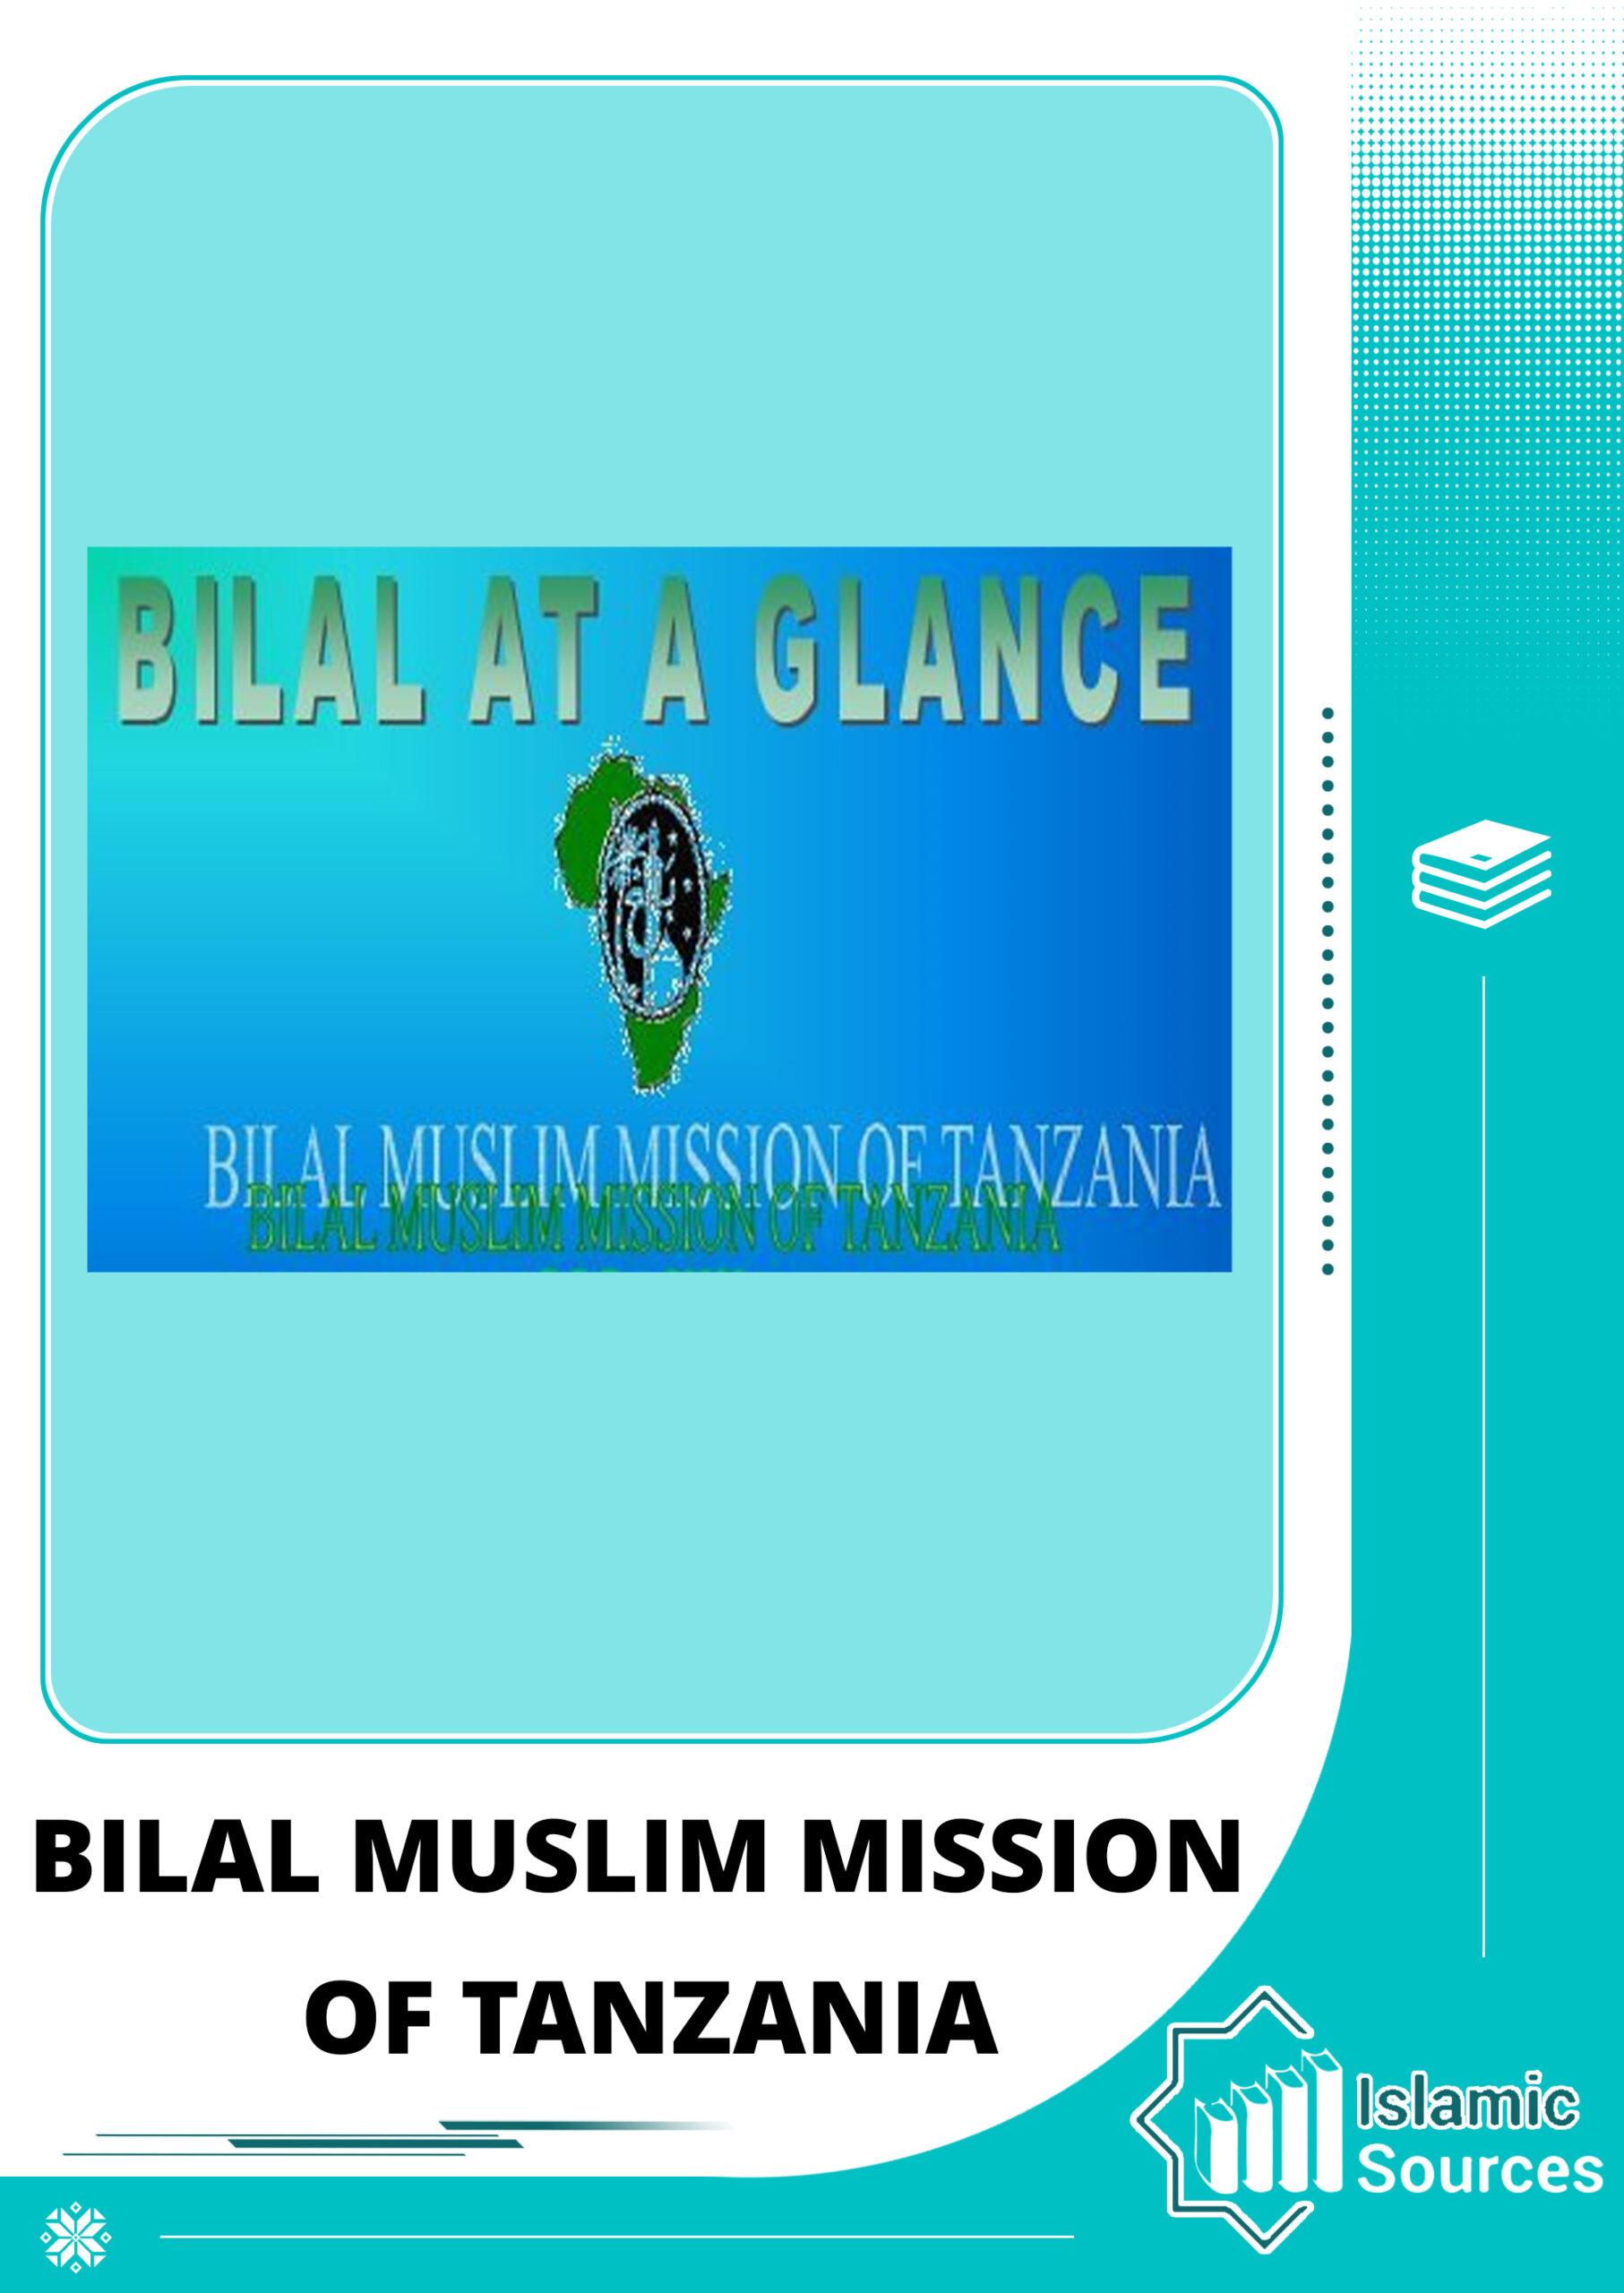 Bilal Muslim Mission of Tanzania